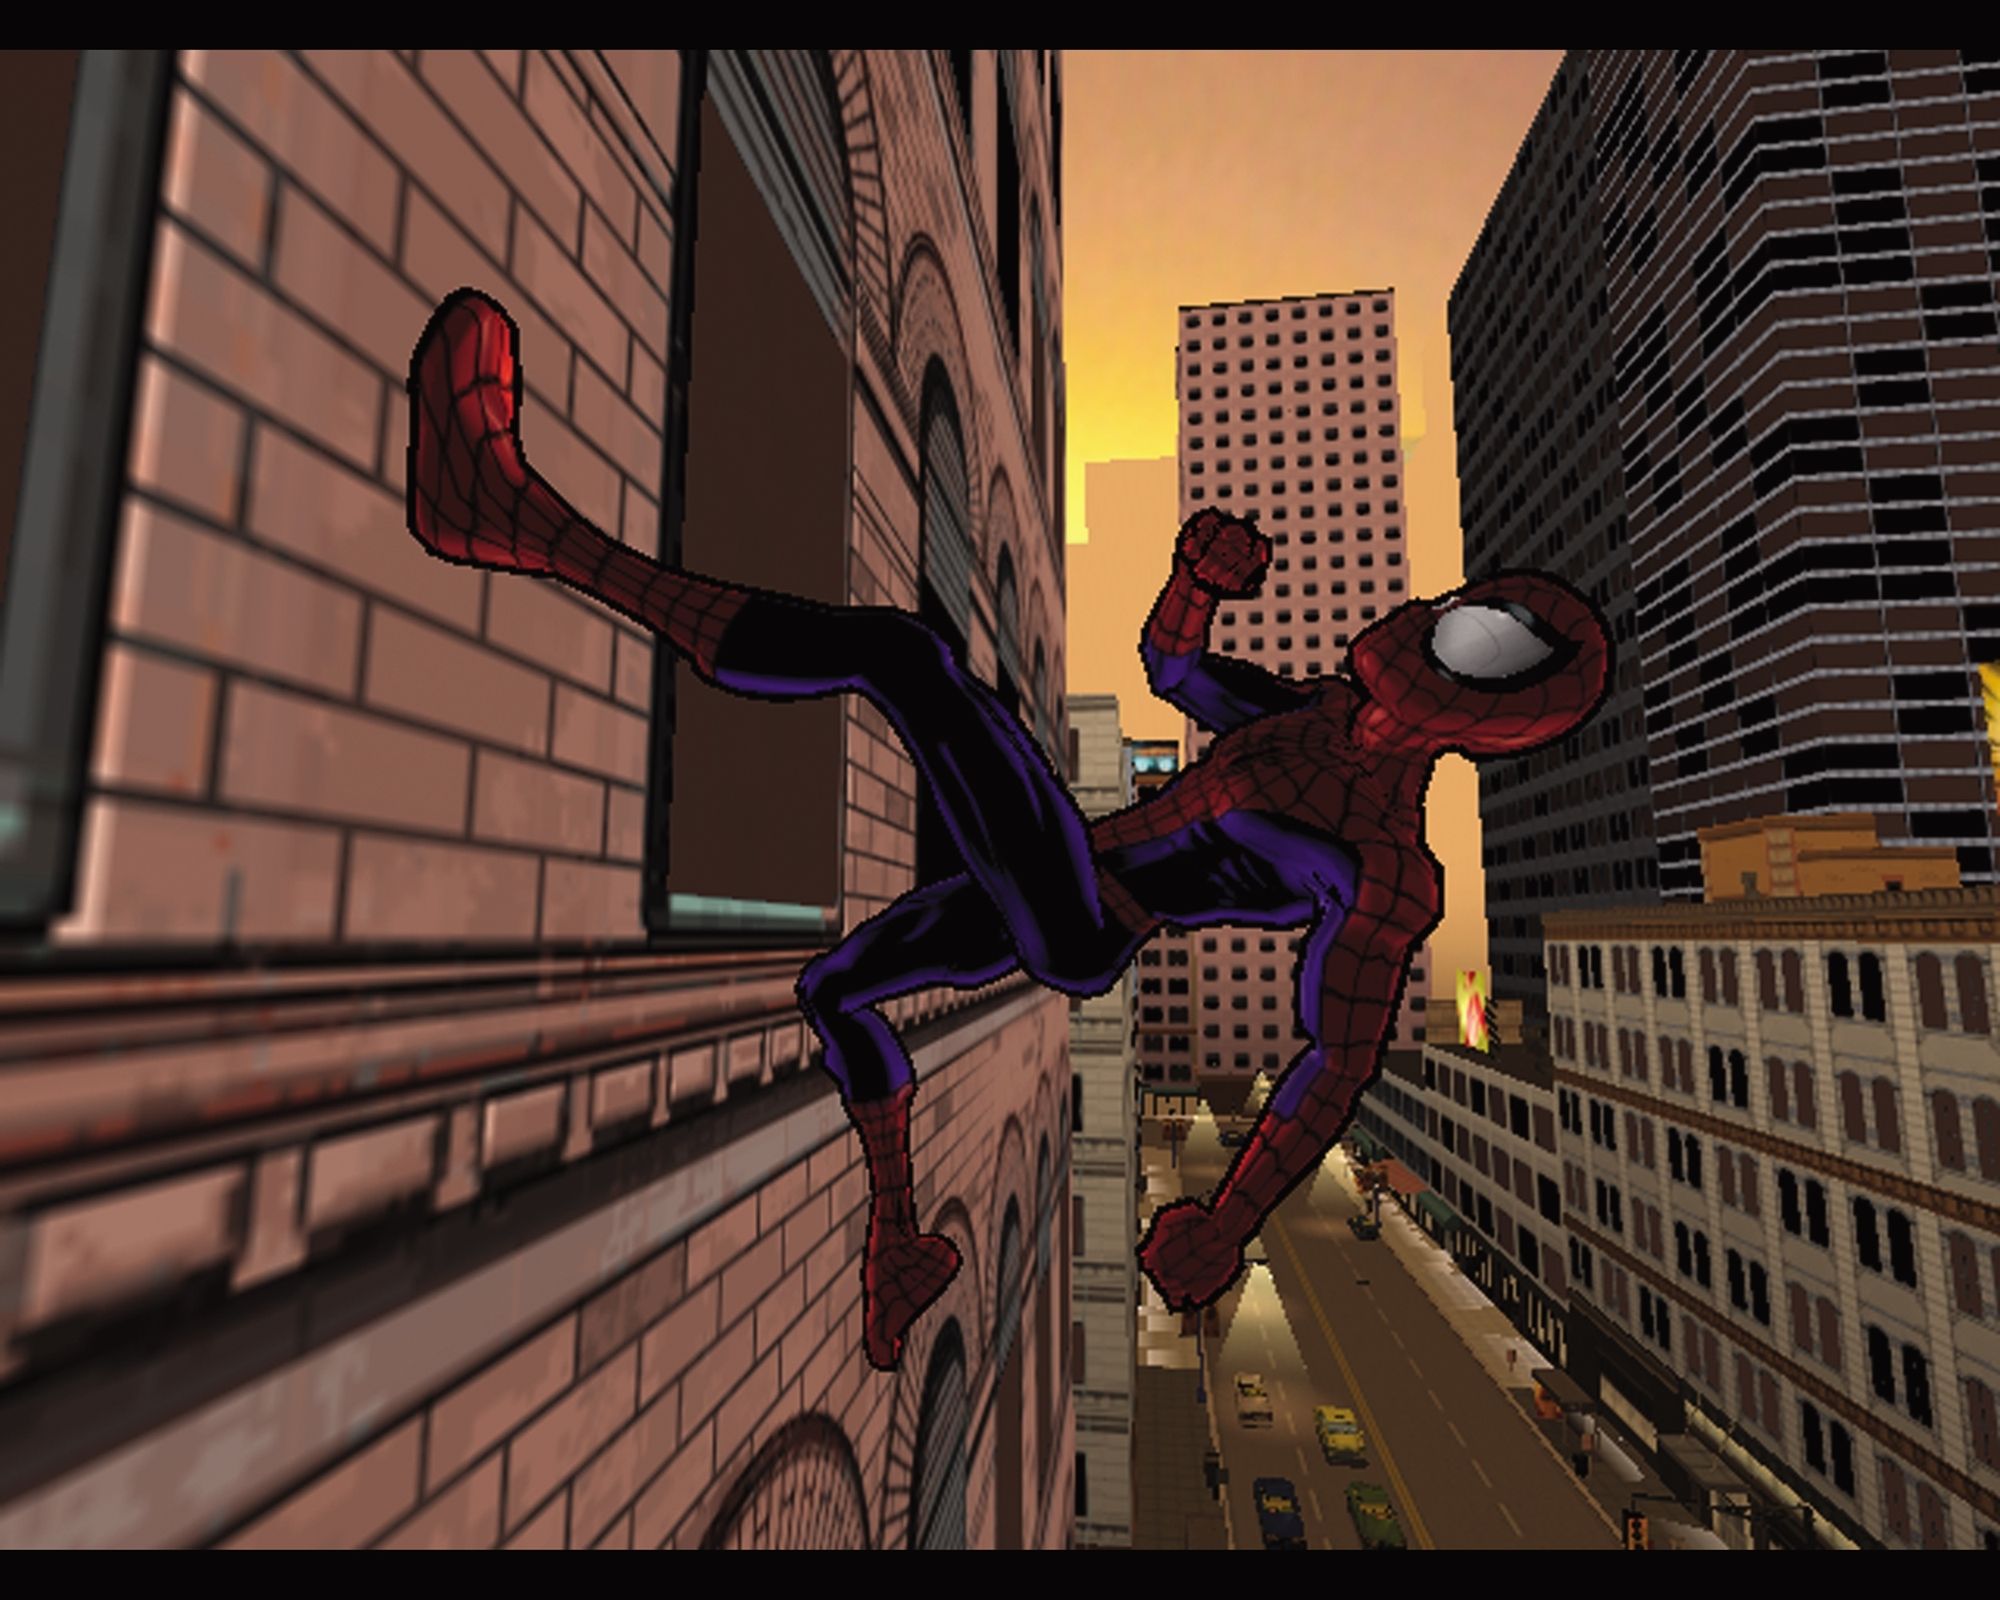 Спайдер мен пк. Ultimate Spider-man (игра). Ультимат человека-паука Ultimate Spider-man. Ultimate Spider-man 2005 игра. Человек паук Алтимейт Спайдермен.